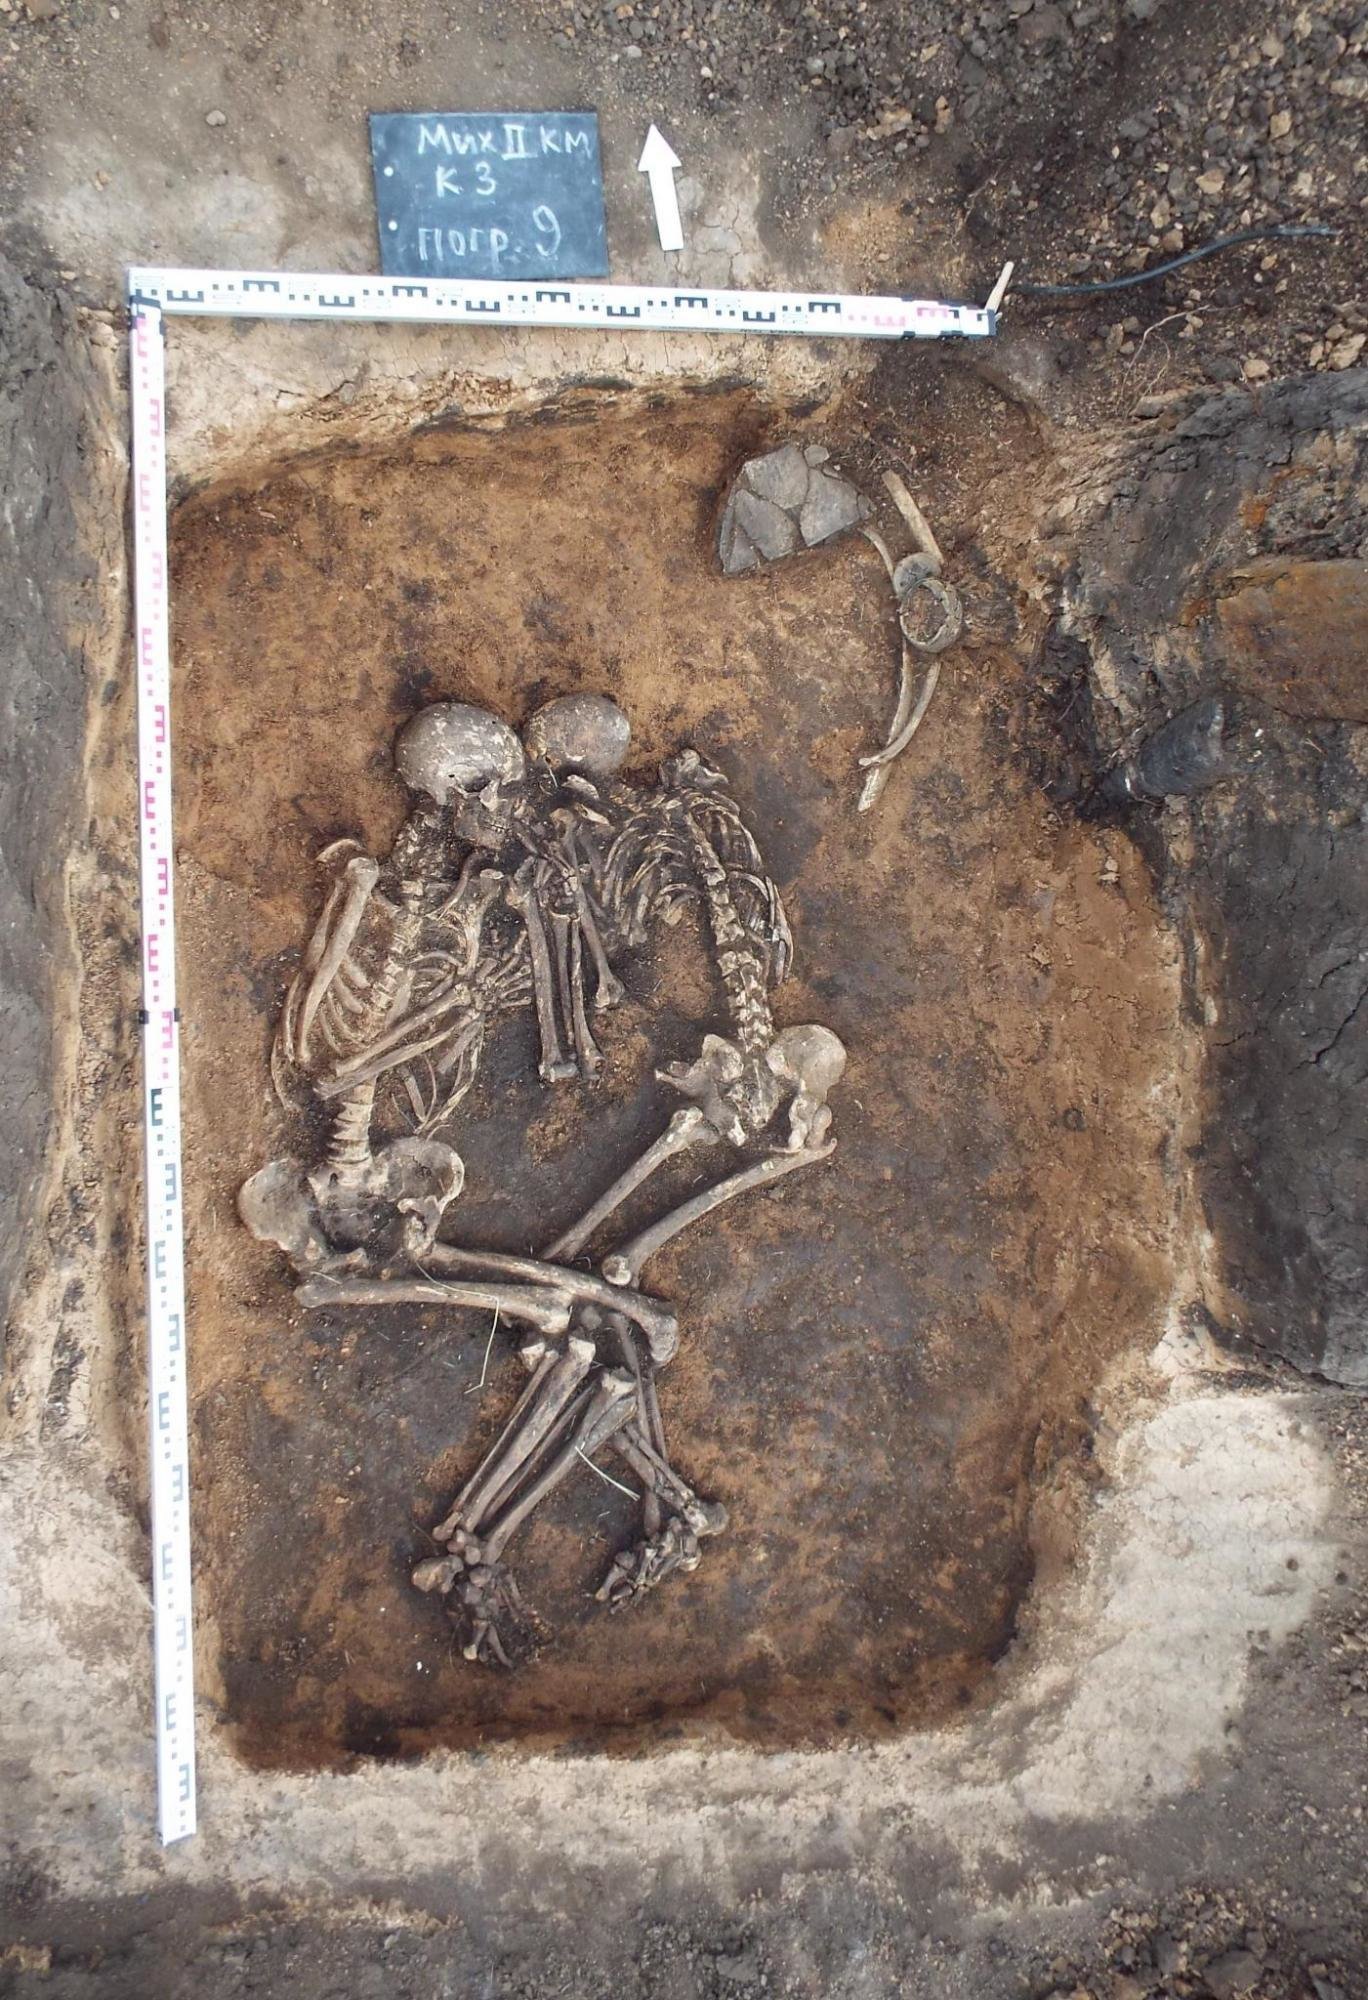 Vor rund 3800 Jahren wurden die beiden Pestopfer in der Samara-Region im heutigen Russland gemeinsam bestattet./© V.V. Kondrashin and V.A. Tsybin; Spyrou et al. 2018. Analysis of 3,800-year-old Yersinia pestis genomes suggests Bronze Age origin for bubonic plague. Nature Communications.